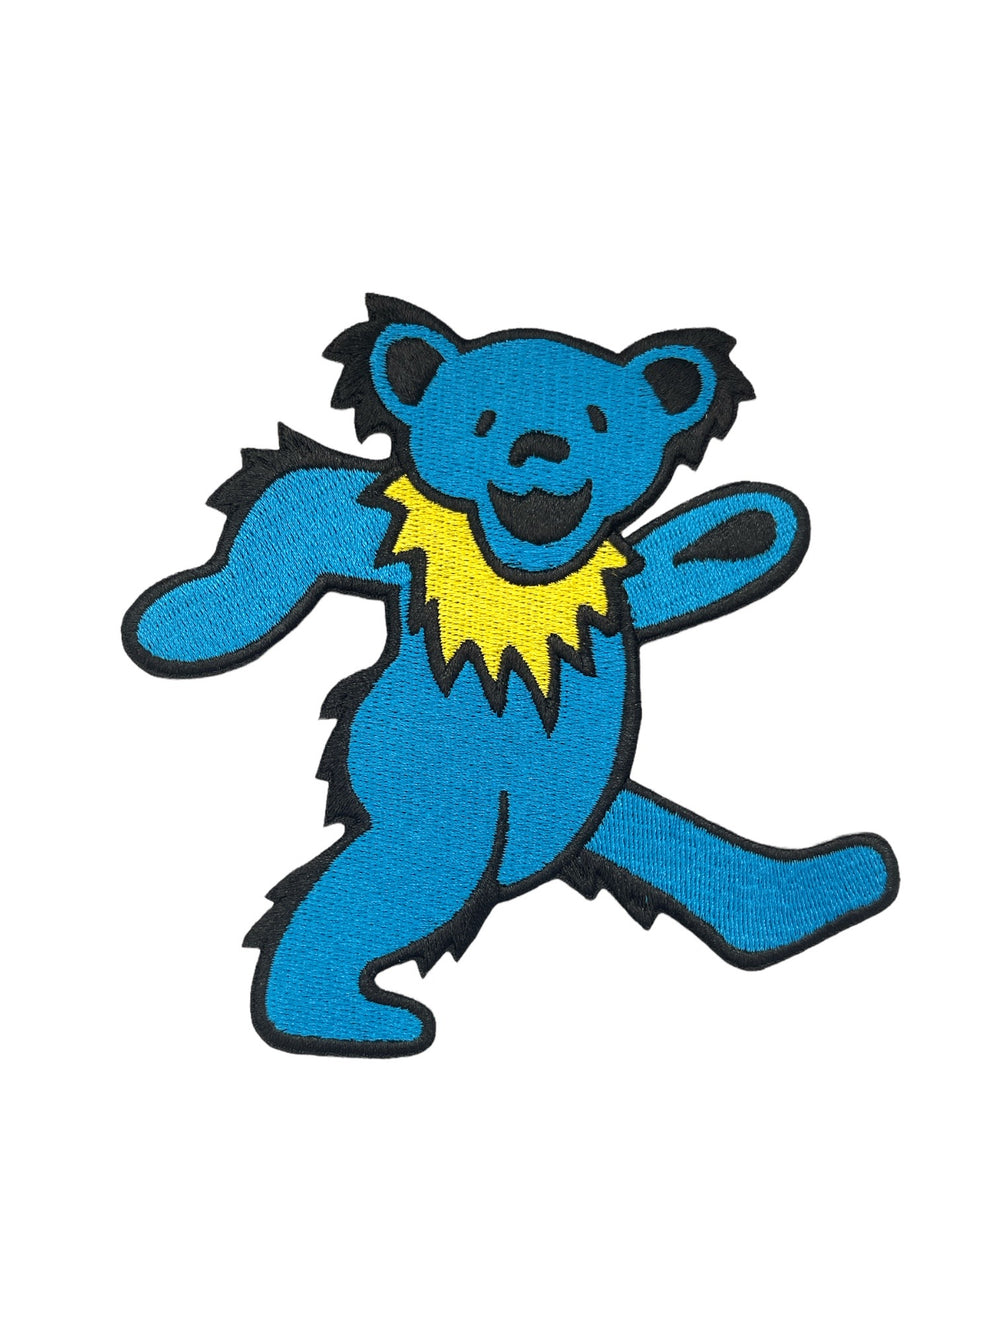 Grateful Dead Blue Dancing Bear Official Woven Patch Brand New